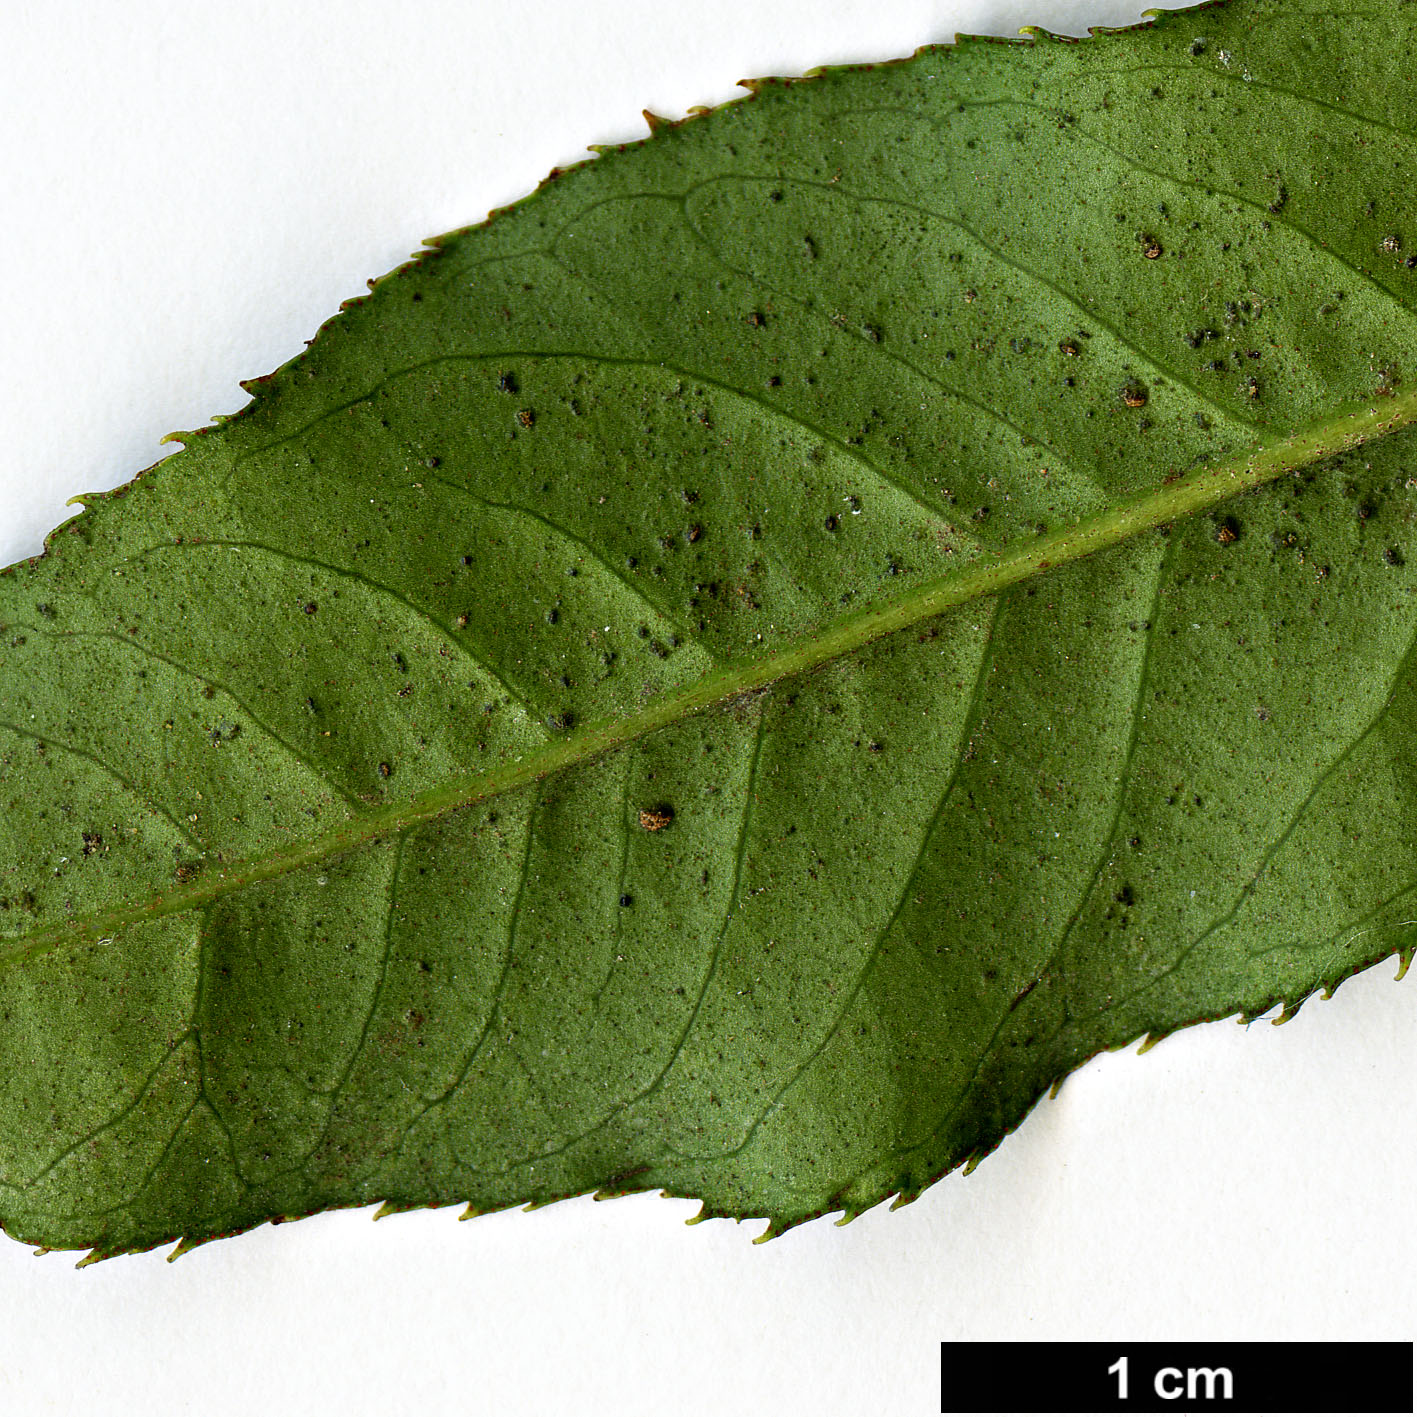 High resolution image: Family: Primulaceae - Genus: Myrsine - Taxon: semiserrata